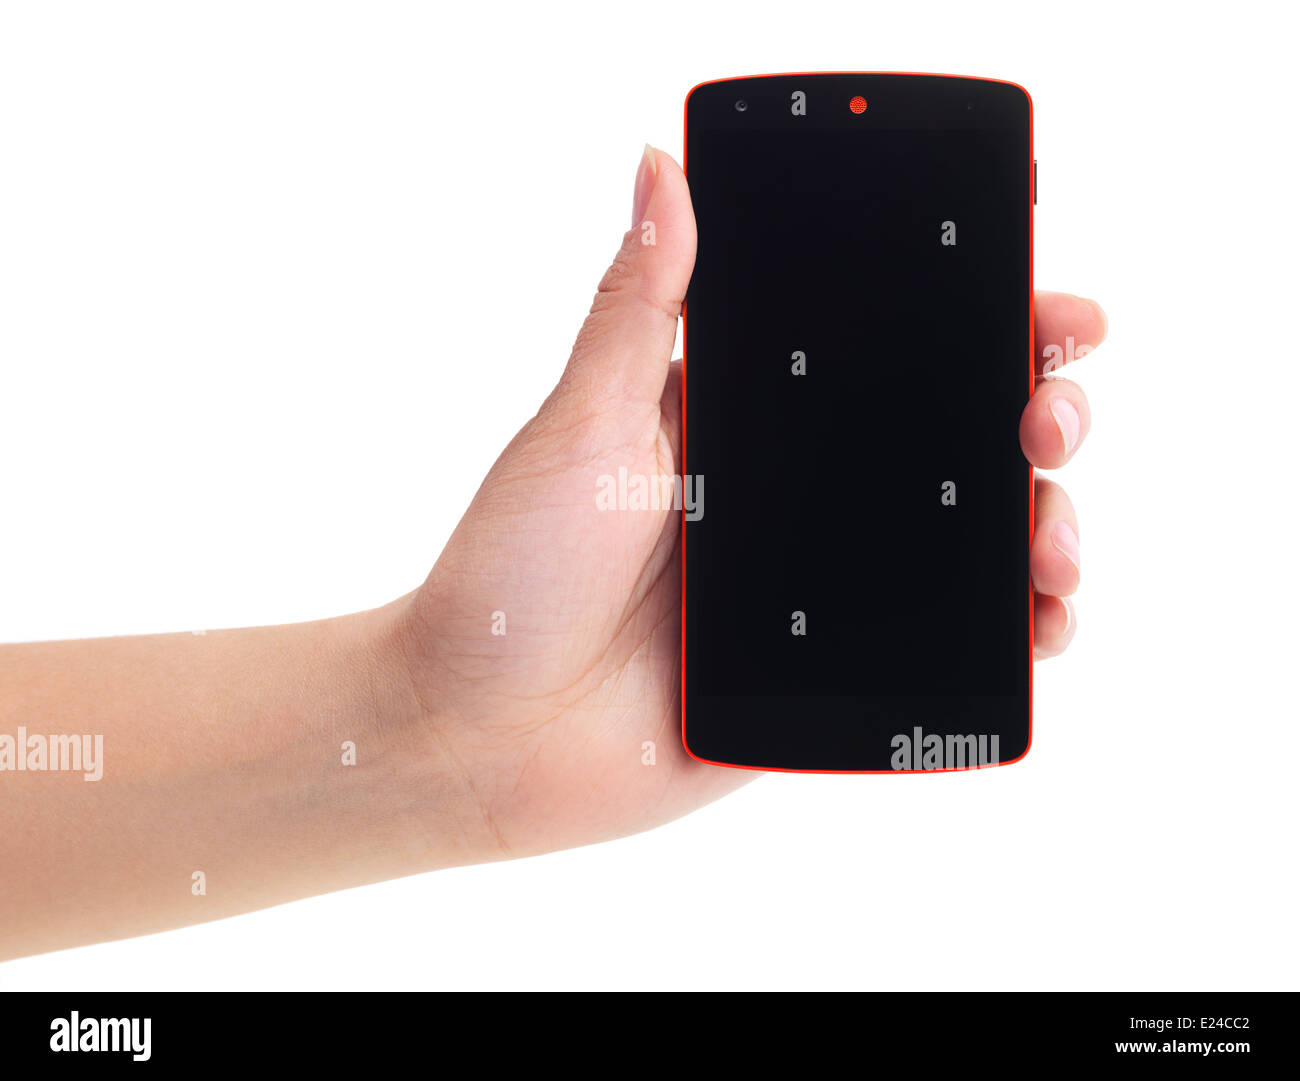 LG Google Android Nexus 5 telefono nella donna la mano isolati su sfondo bianco Foto Stock